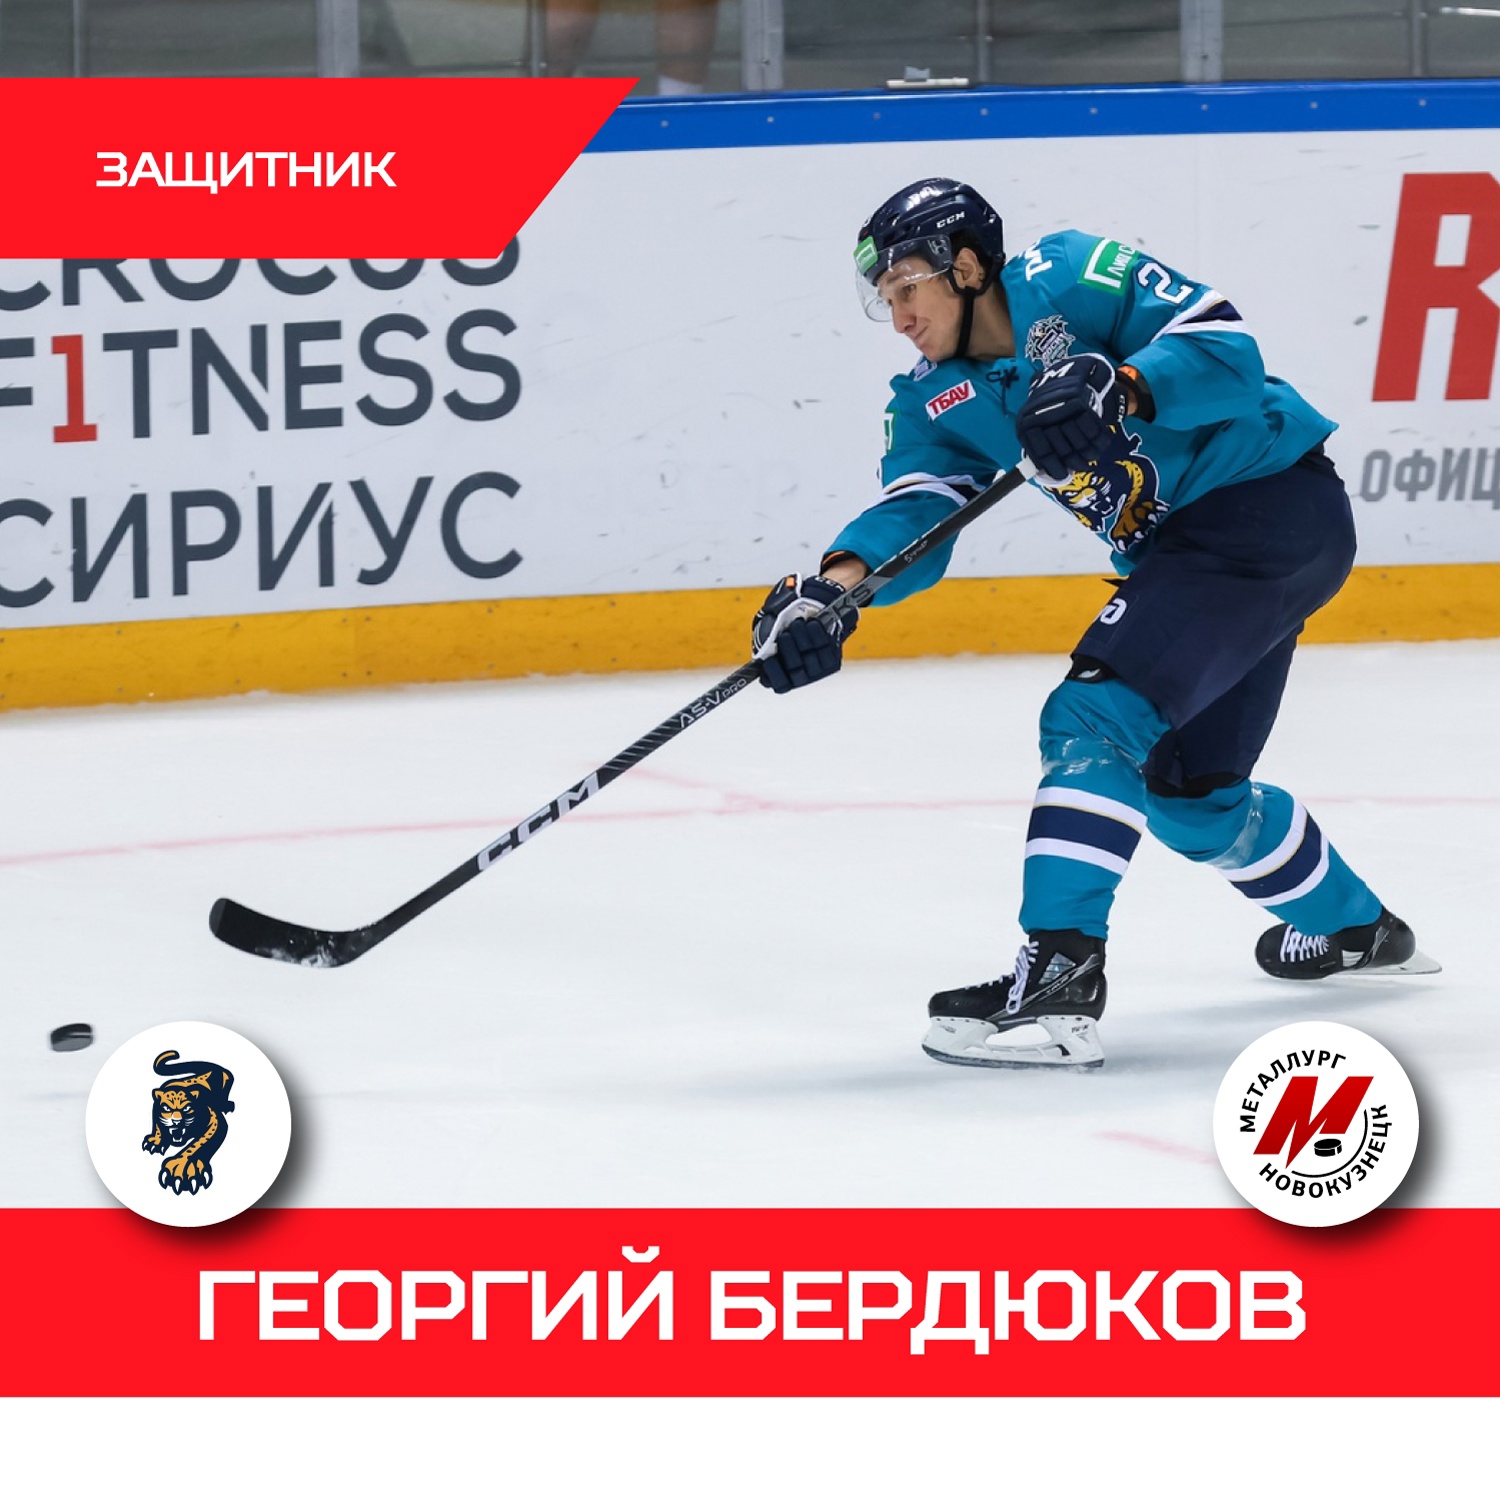 Новокузнецкий хоккейный клуб подписал контракт с новым защитником